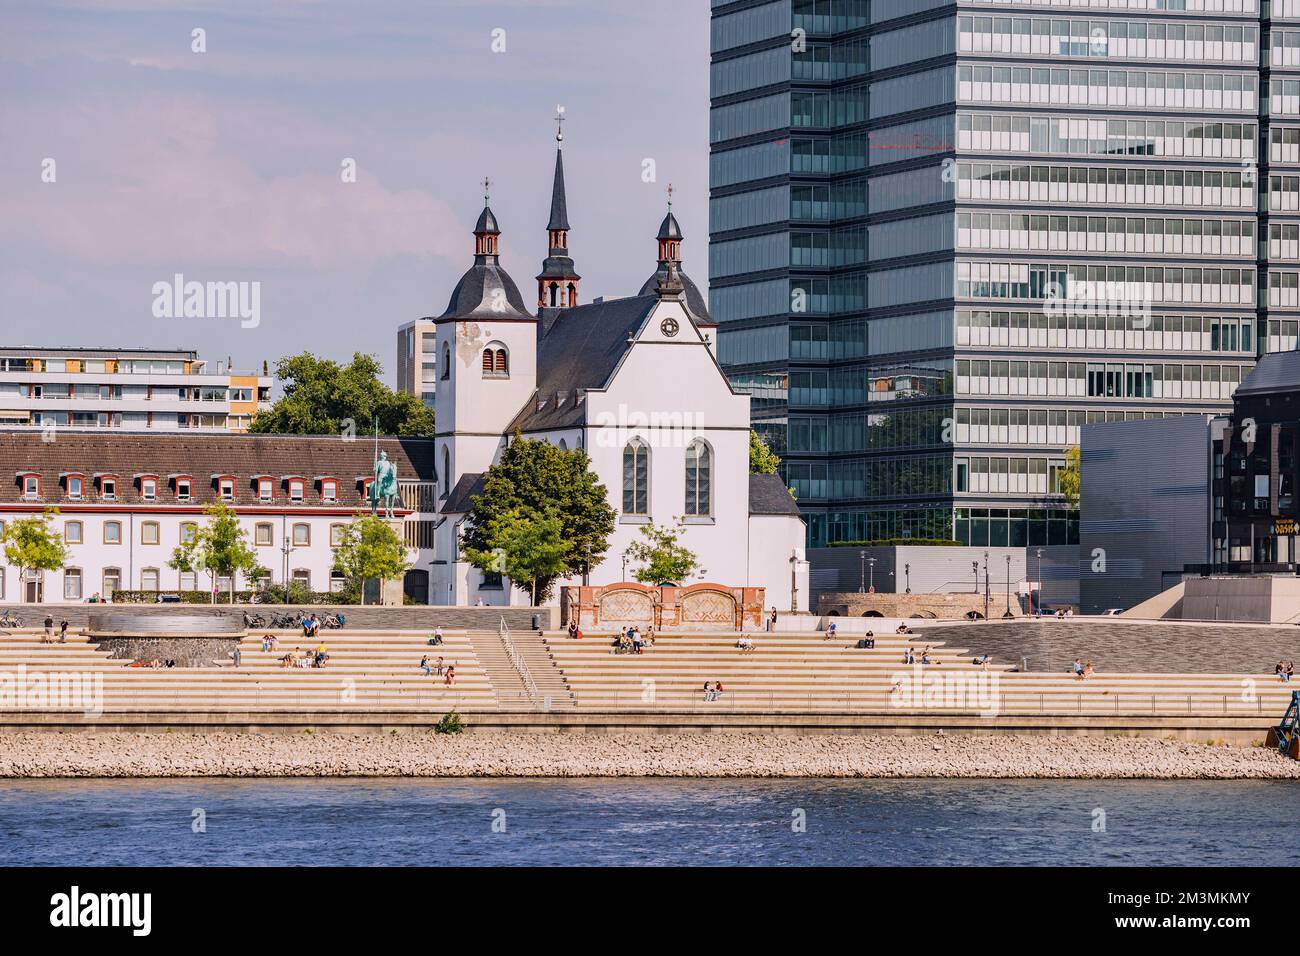 29 luglio 2022, Colonia, Germania: L'argine del Reno con la chiesa di Griechisch Orthodoxe Kirche Foto Stock